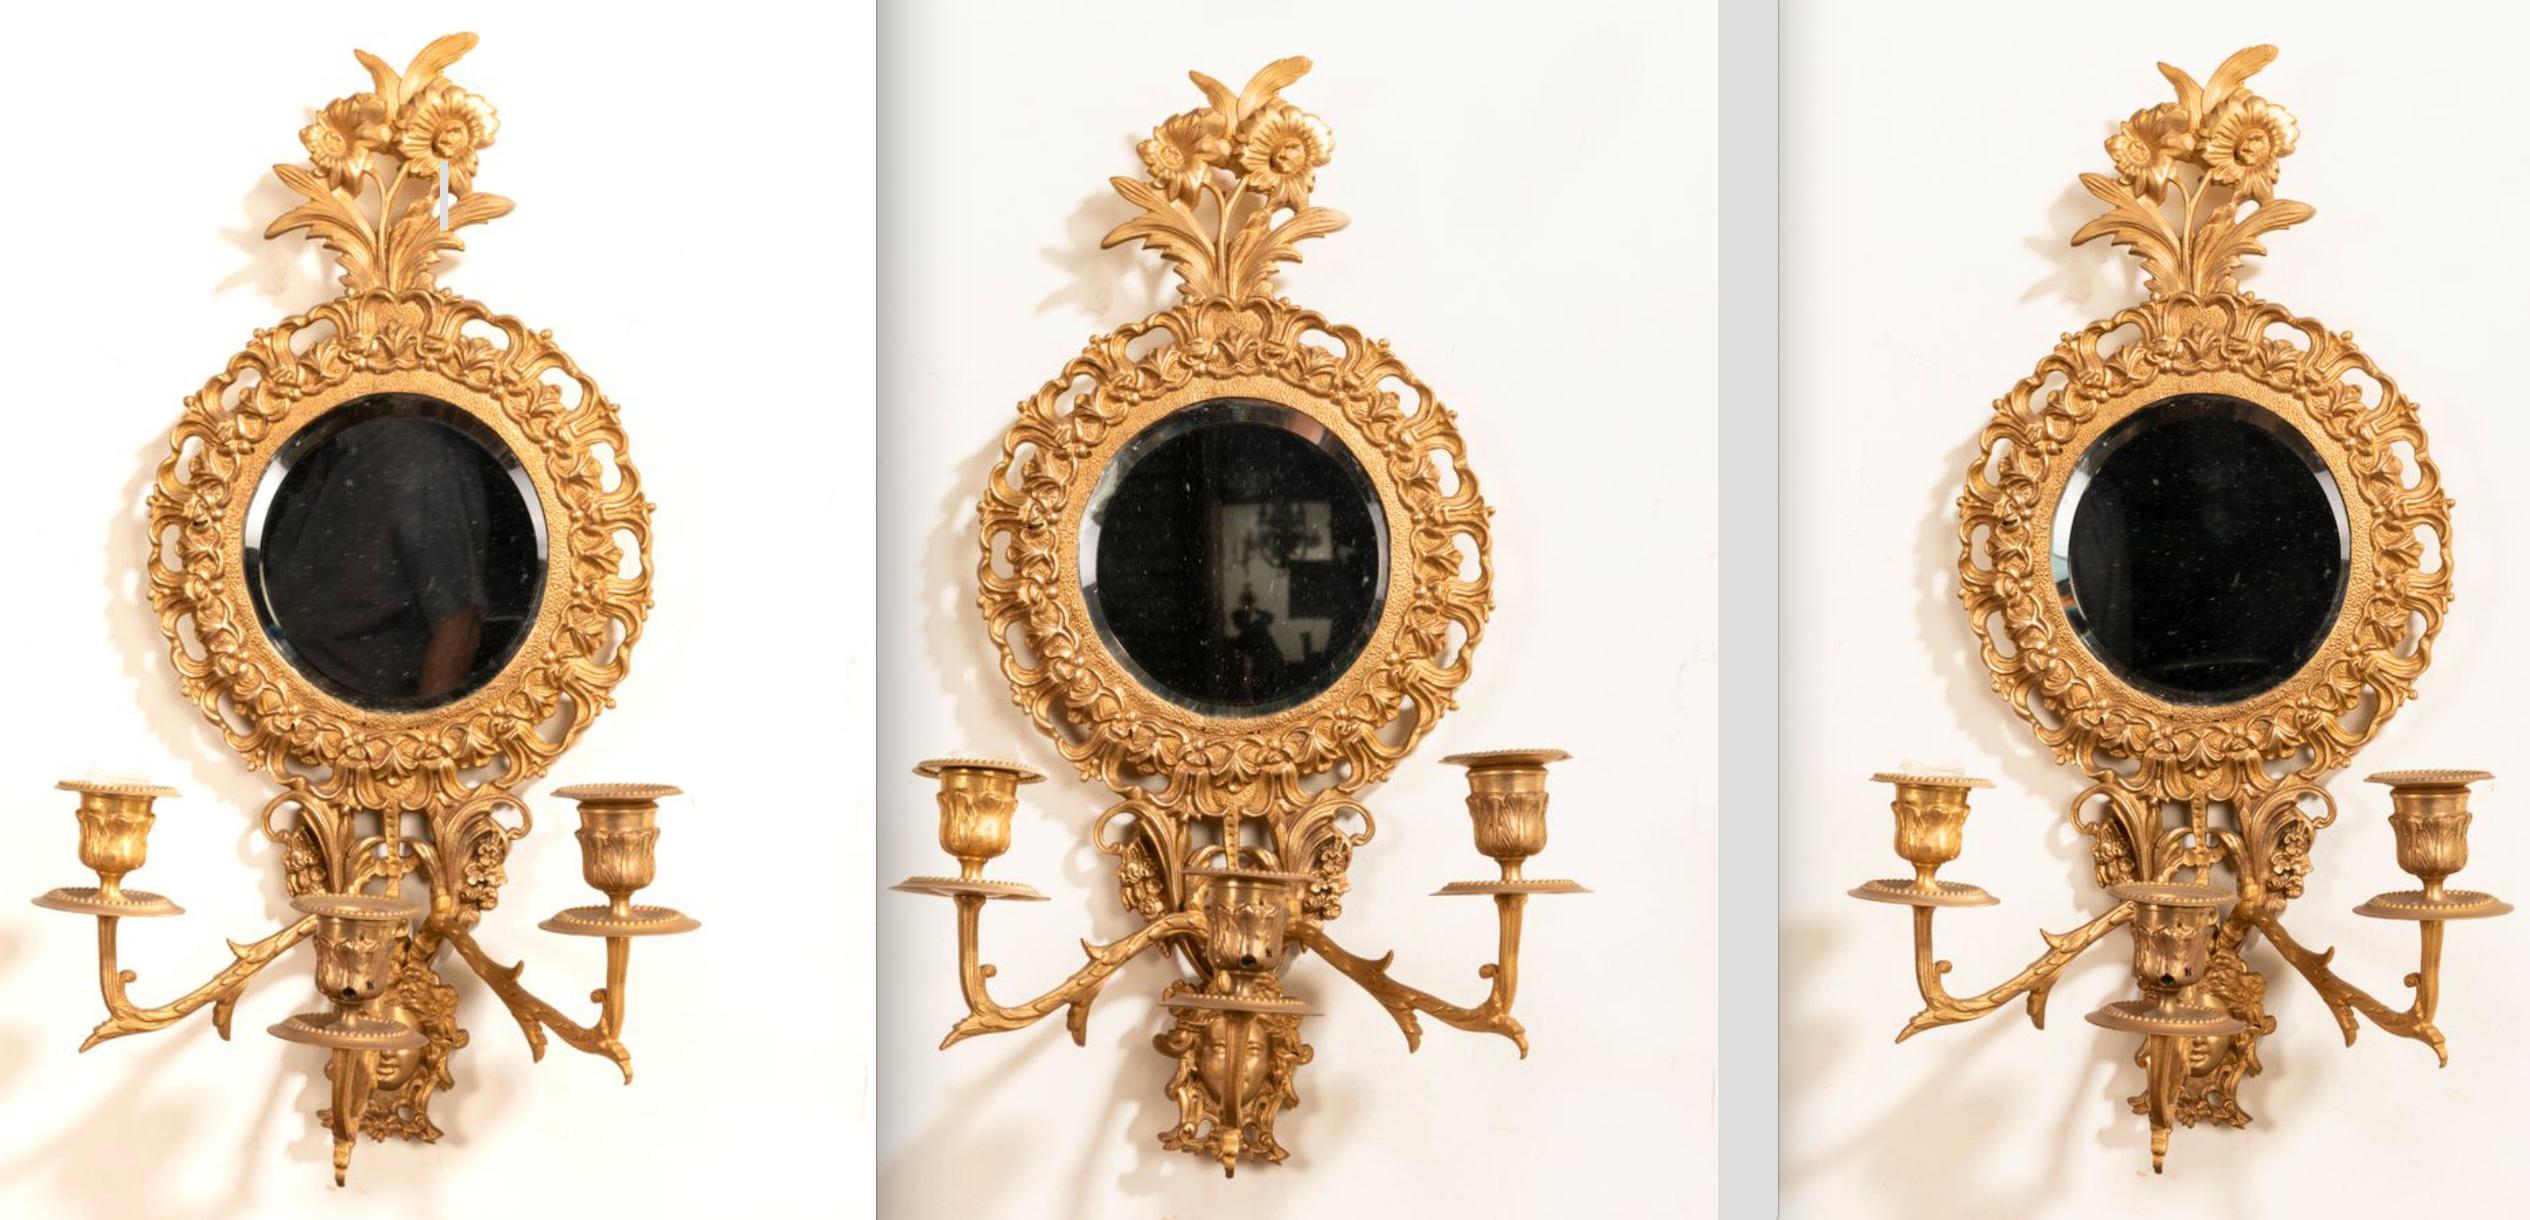 paar blattvergoldete, zweiflammige Wandleuchter aus dem 19. Jahrhundert, mit originalem Spiegelglas. 
Wandleuchter können verkabelt werden,
Frankreich, um 1880.